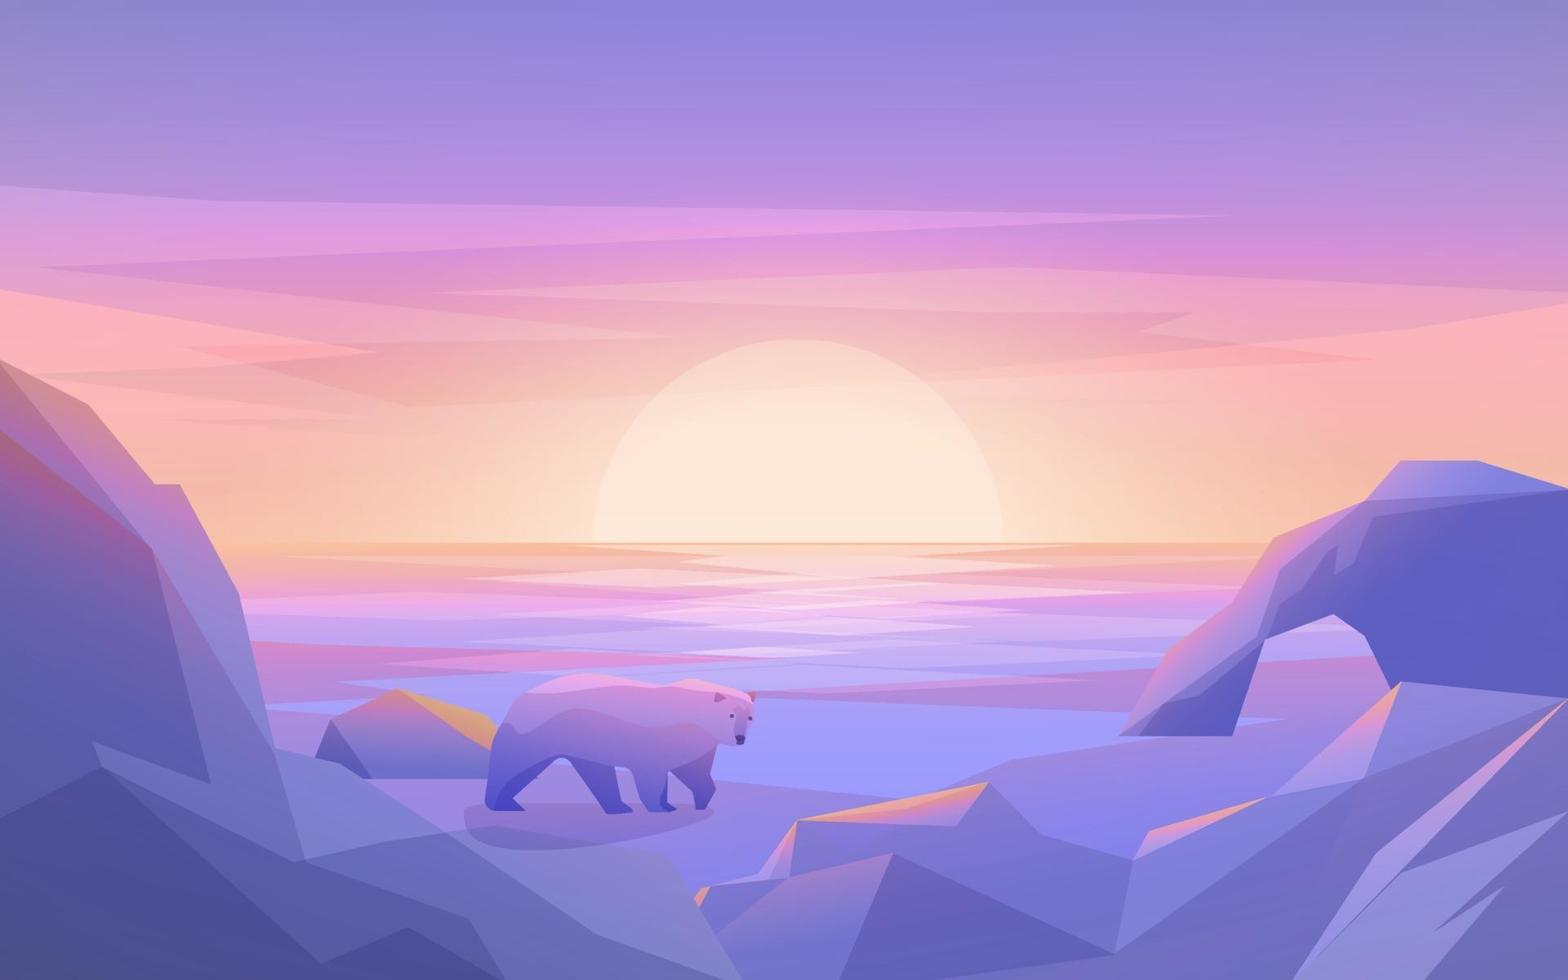 tramonto polare con iceberg e orso vettore